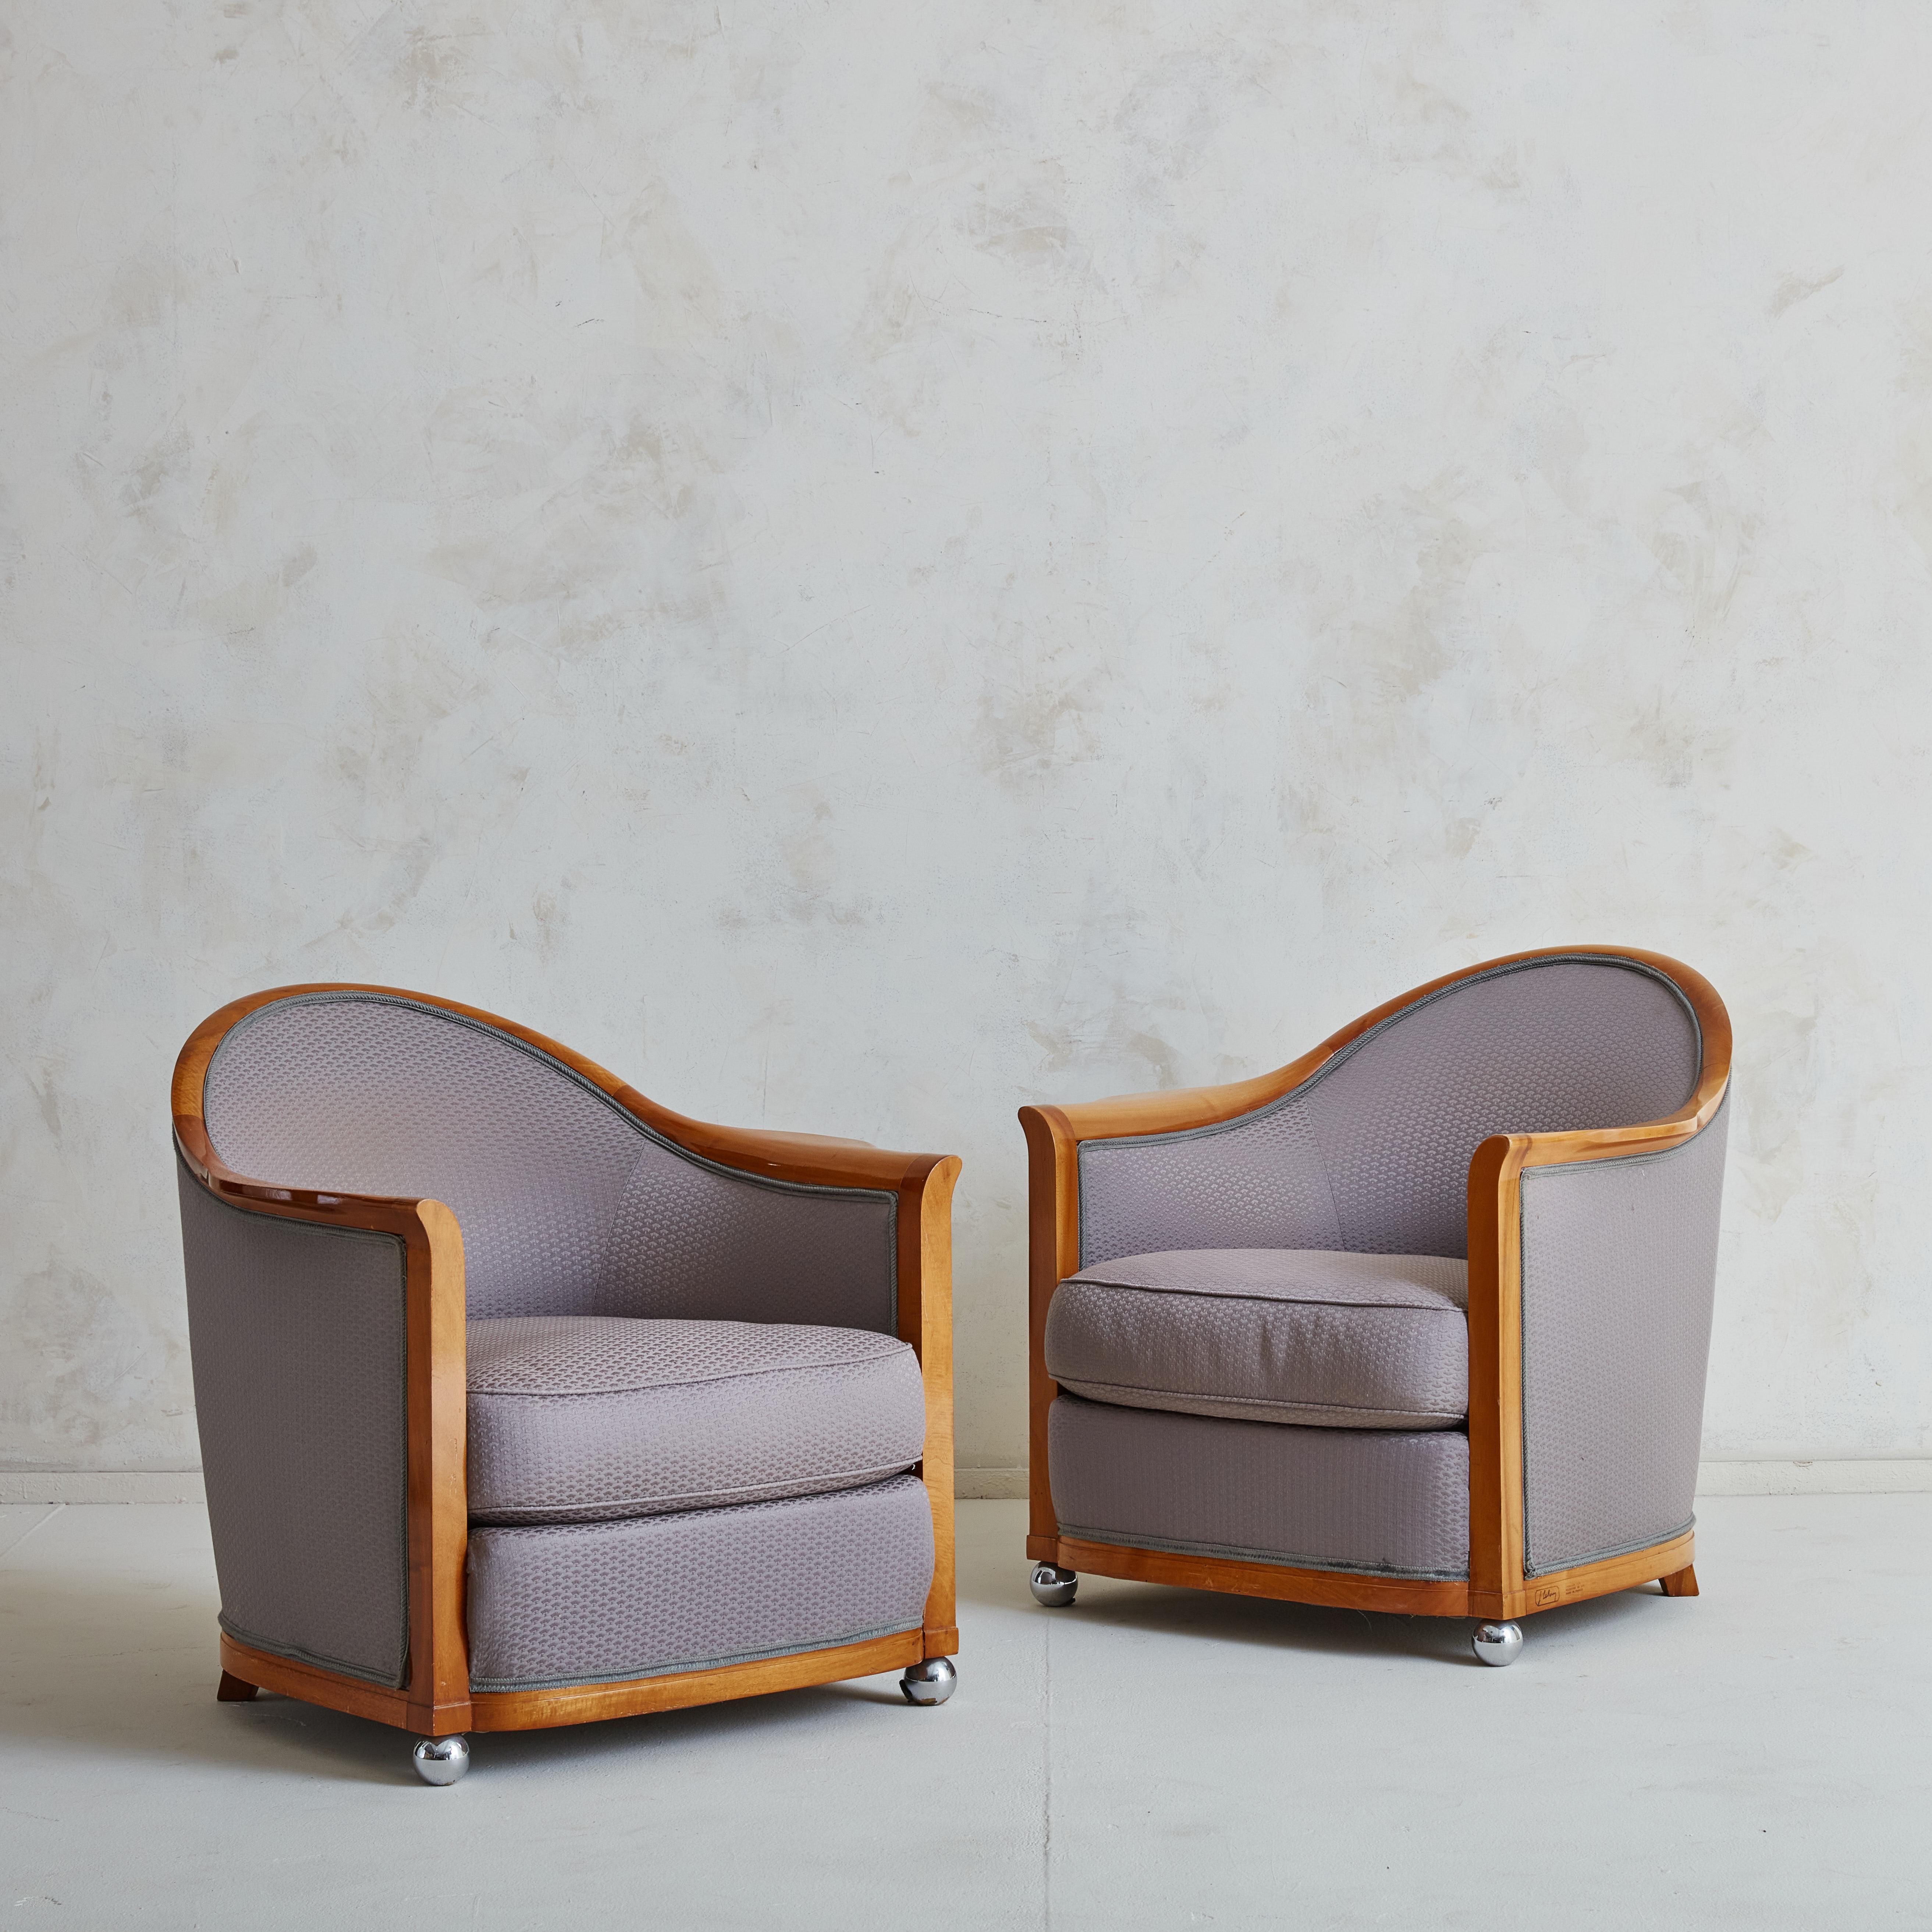 Belle paire de fauteuils art déco Dessinés par Jules Leleu en 1929,  et réédité en 1986 pour l'hôtel La Mamounia de Marrakech, commandé par Jacques Garcia. 
Cette magnifique paire de fauteuils a été fabriquée dans une étonnante structure en bois